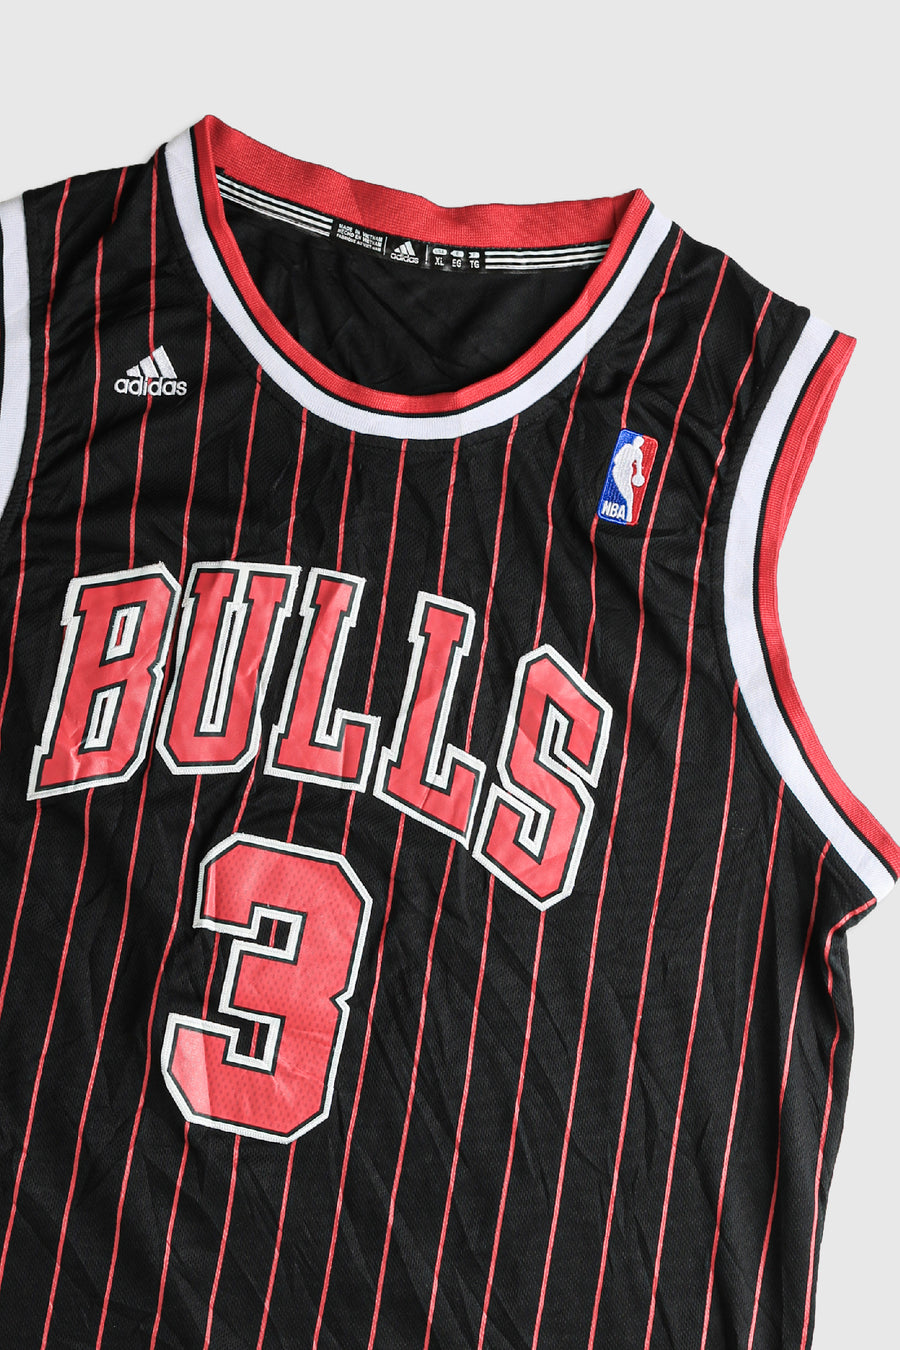 Vintage Bulls NBA Jersey